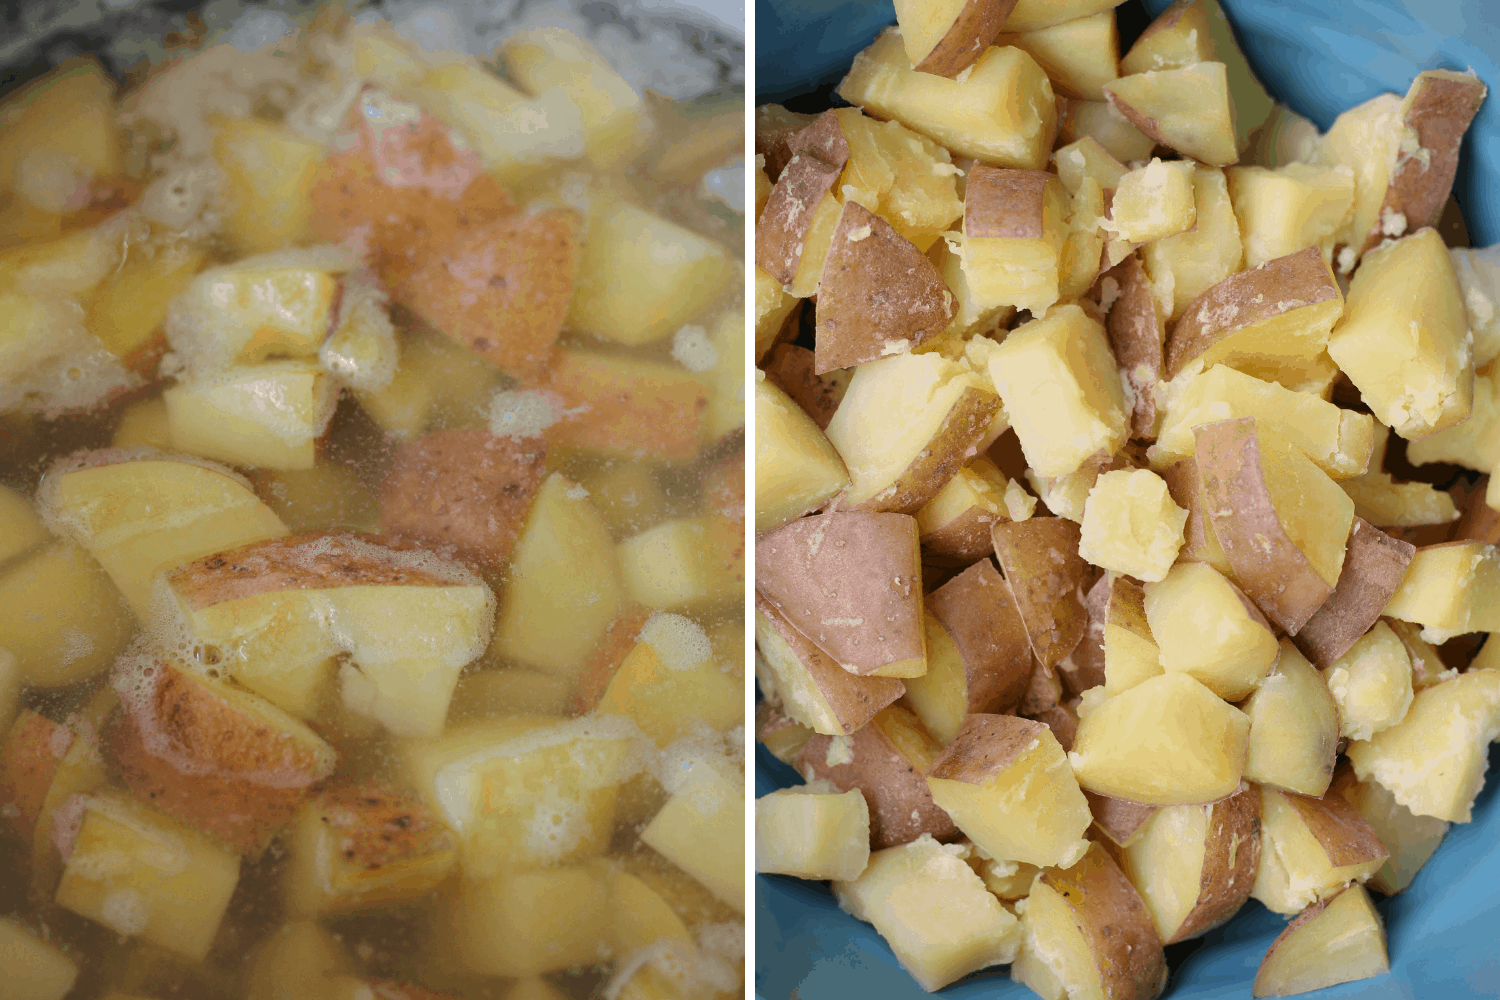 Vegan potato salad ingredients